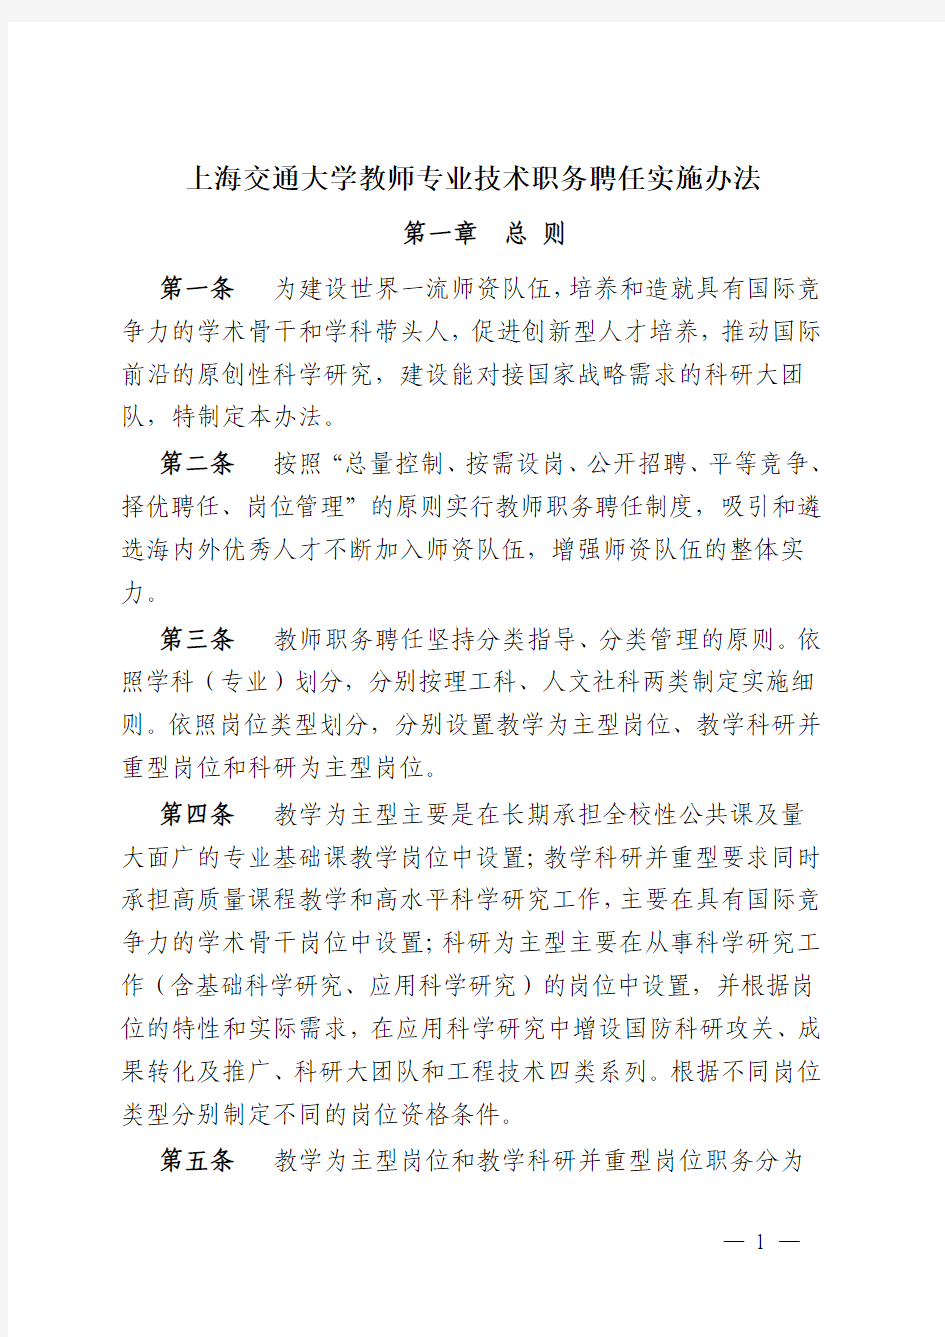 上海交通大学教师职务聘任实施办法-上海交通大学农业与生物学院